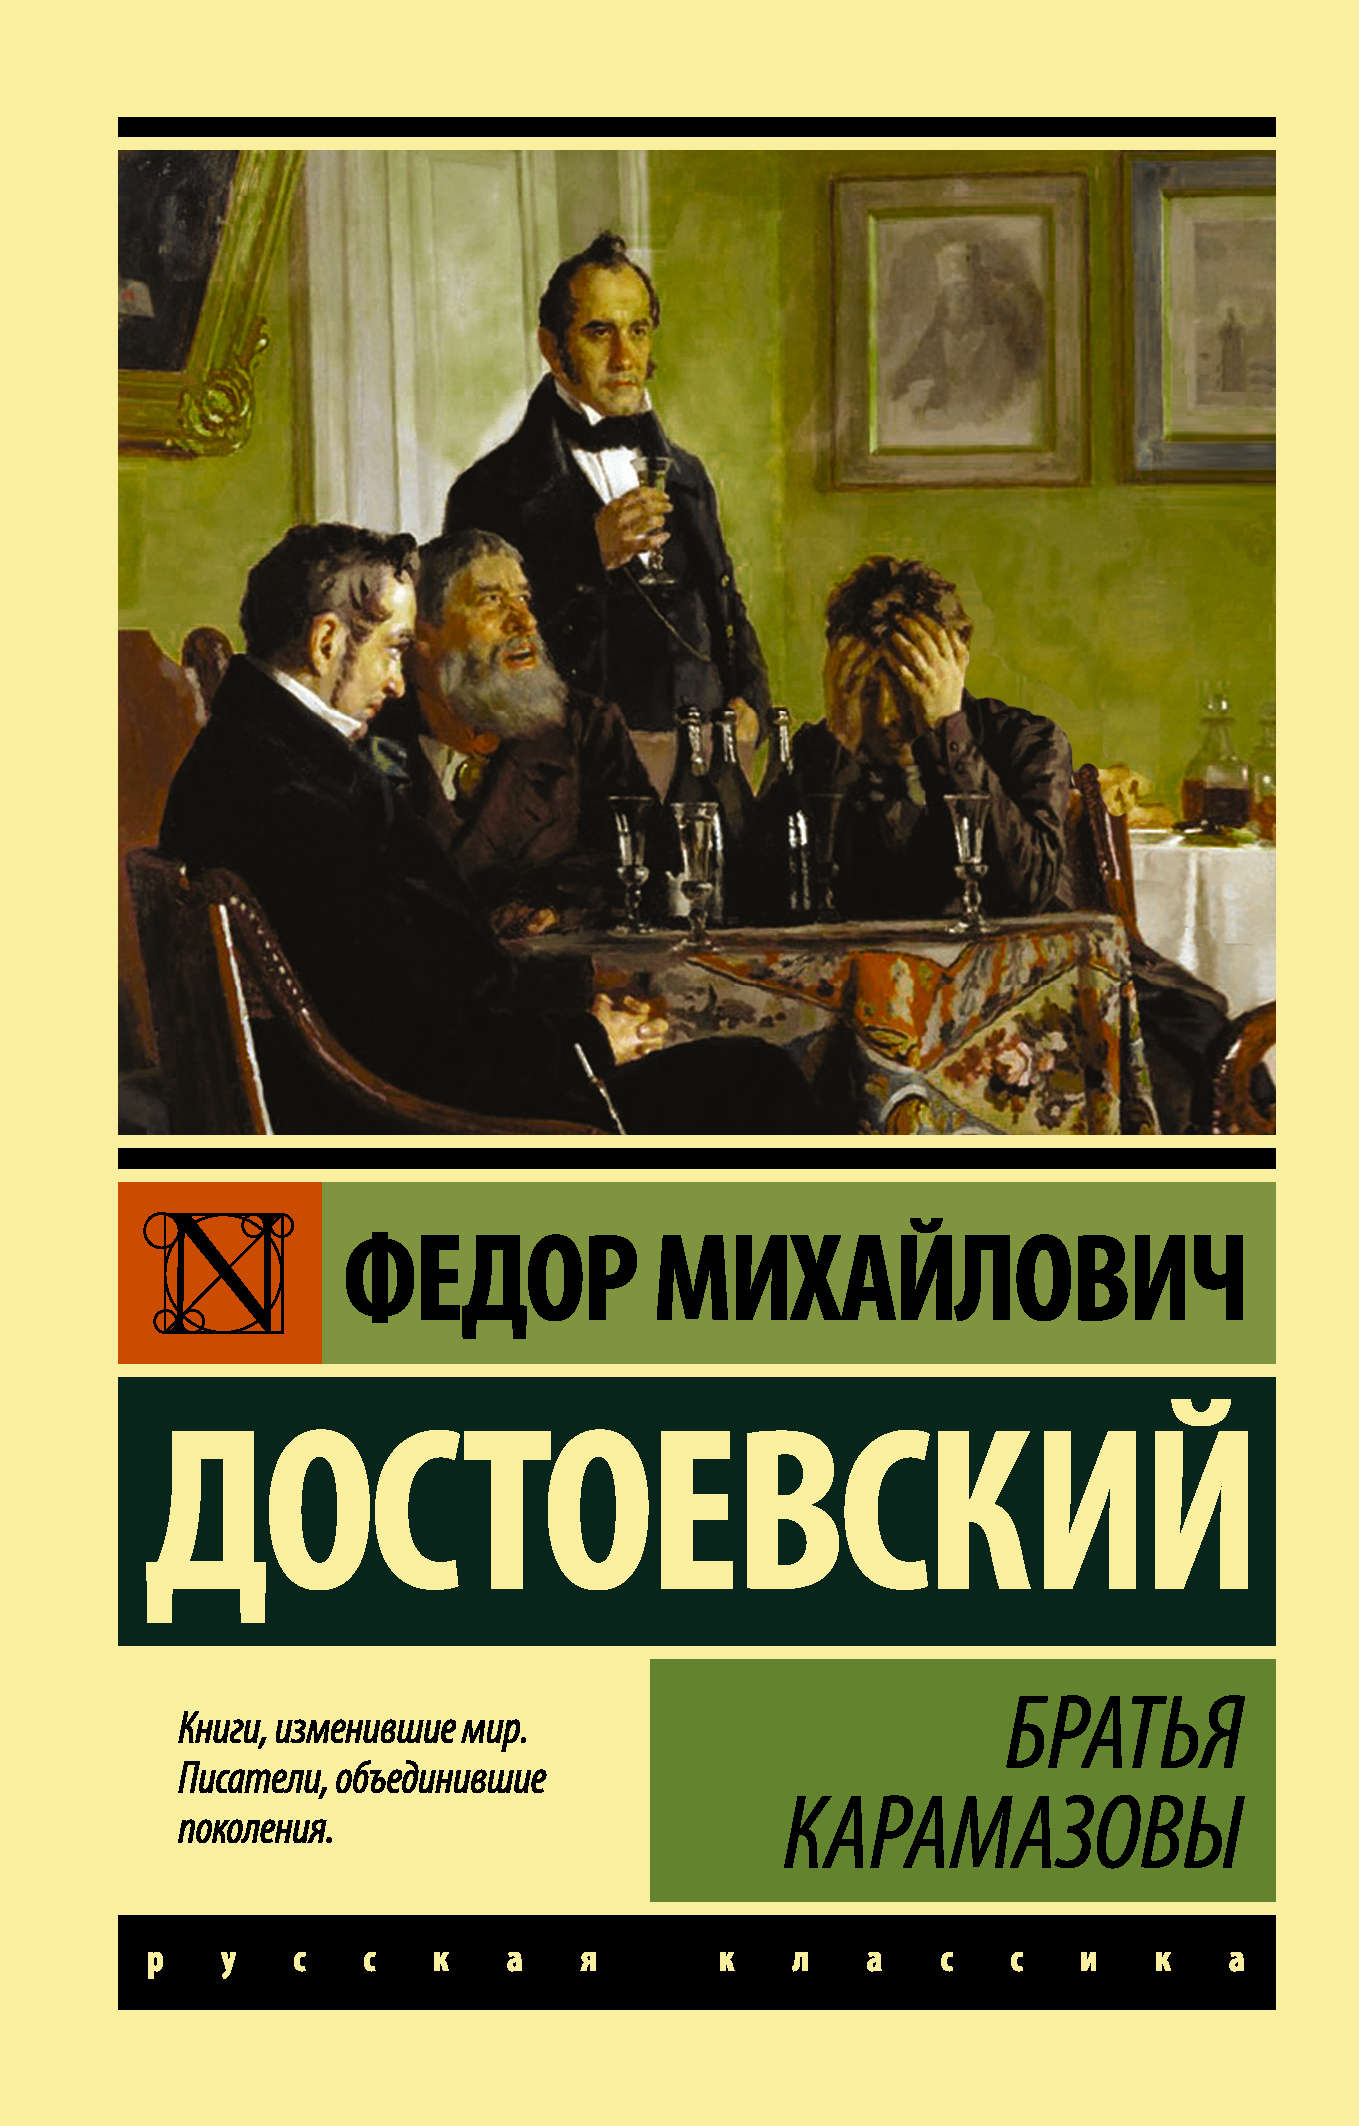 «Братья Карамазовы» ф. м. Достоевского (1880)